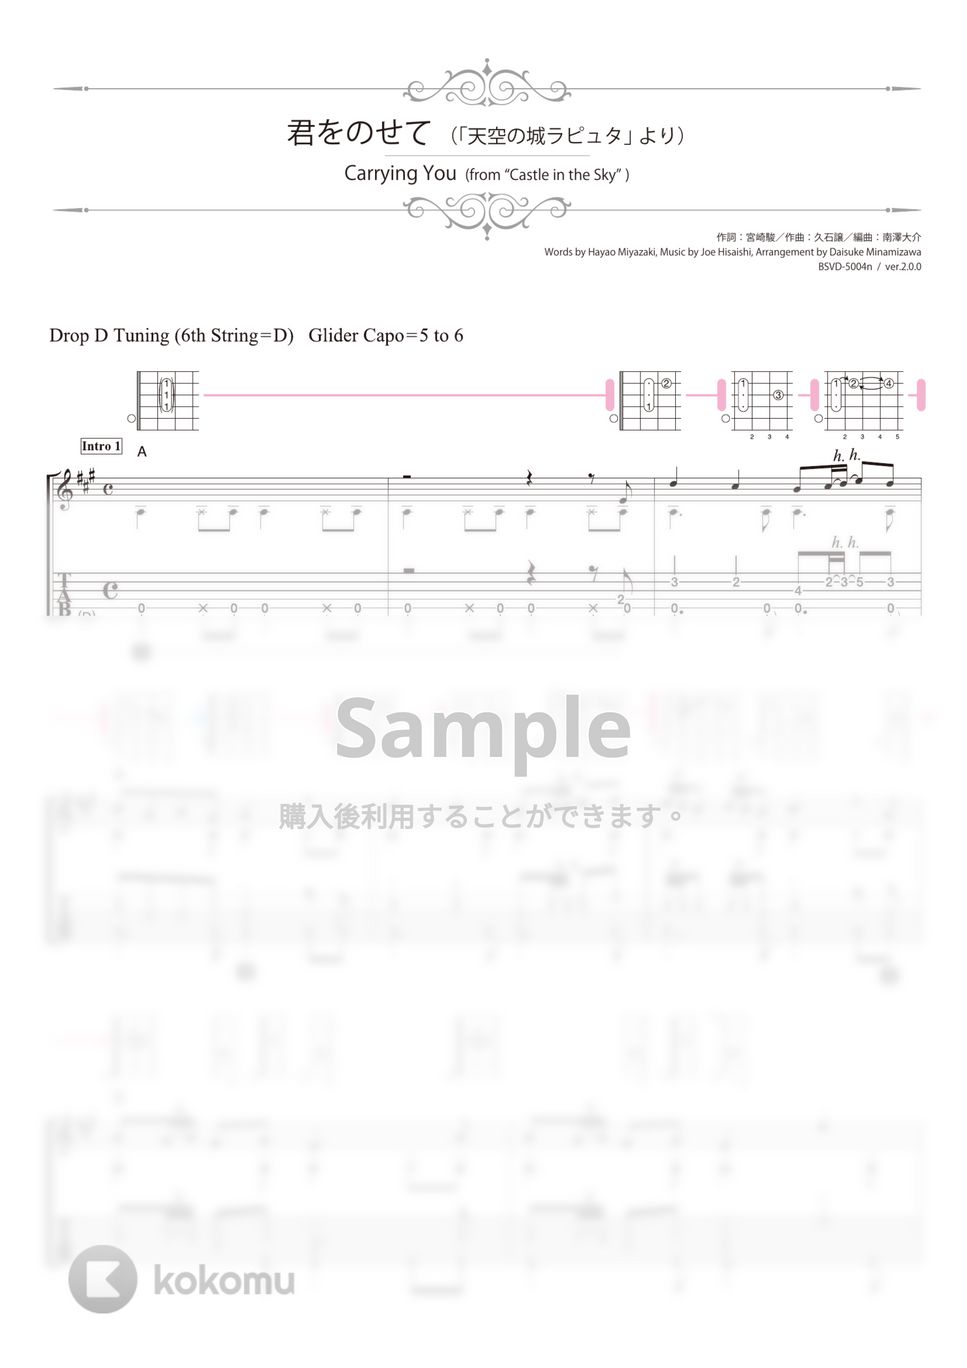 天空の城ラピュタ - 君をのせて (ソロギター) by 南澤大介